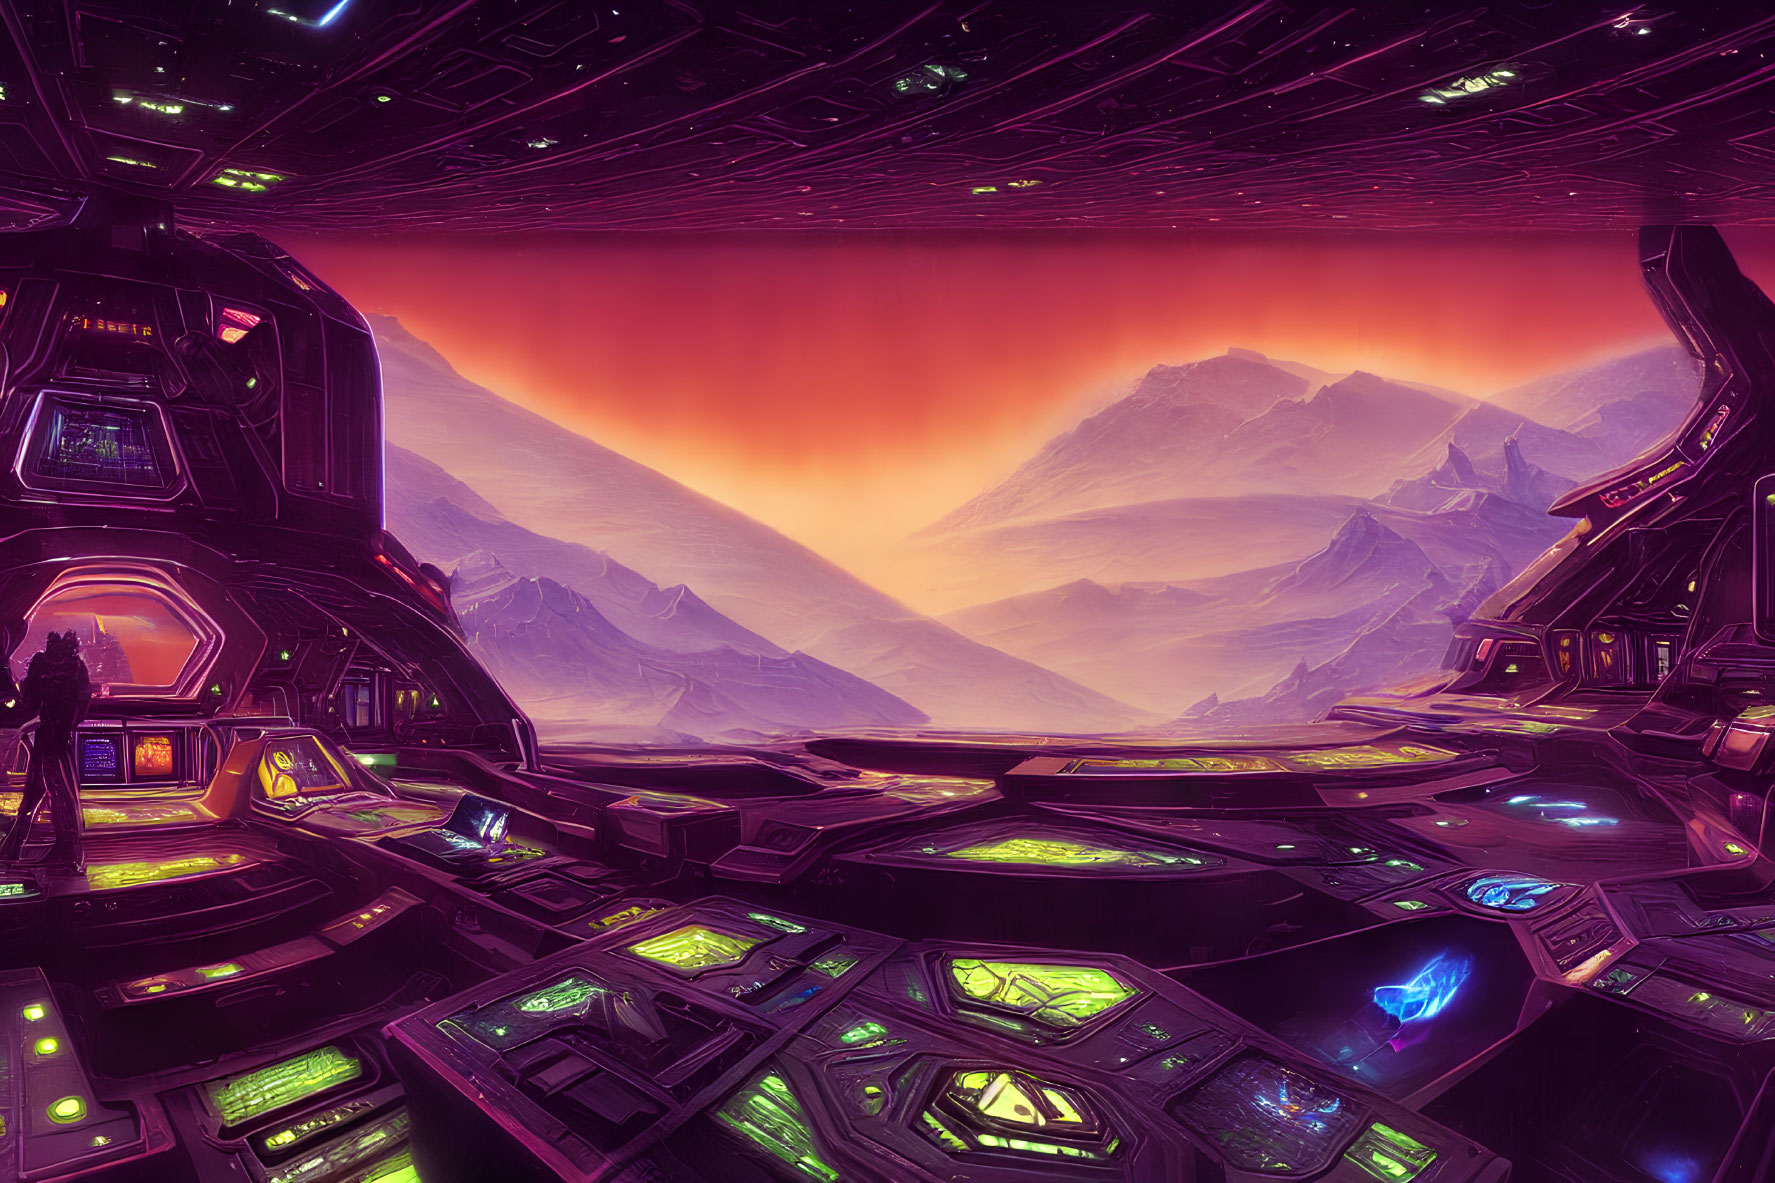 Futuristic Spaceship Interior Overlooking Alien Landscape